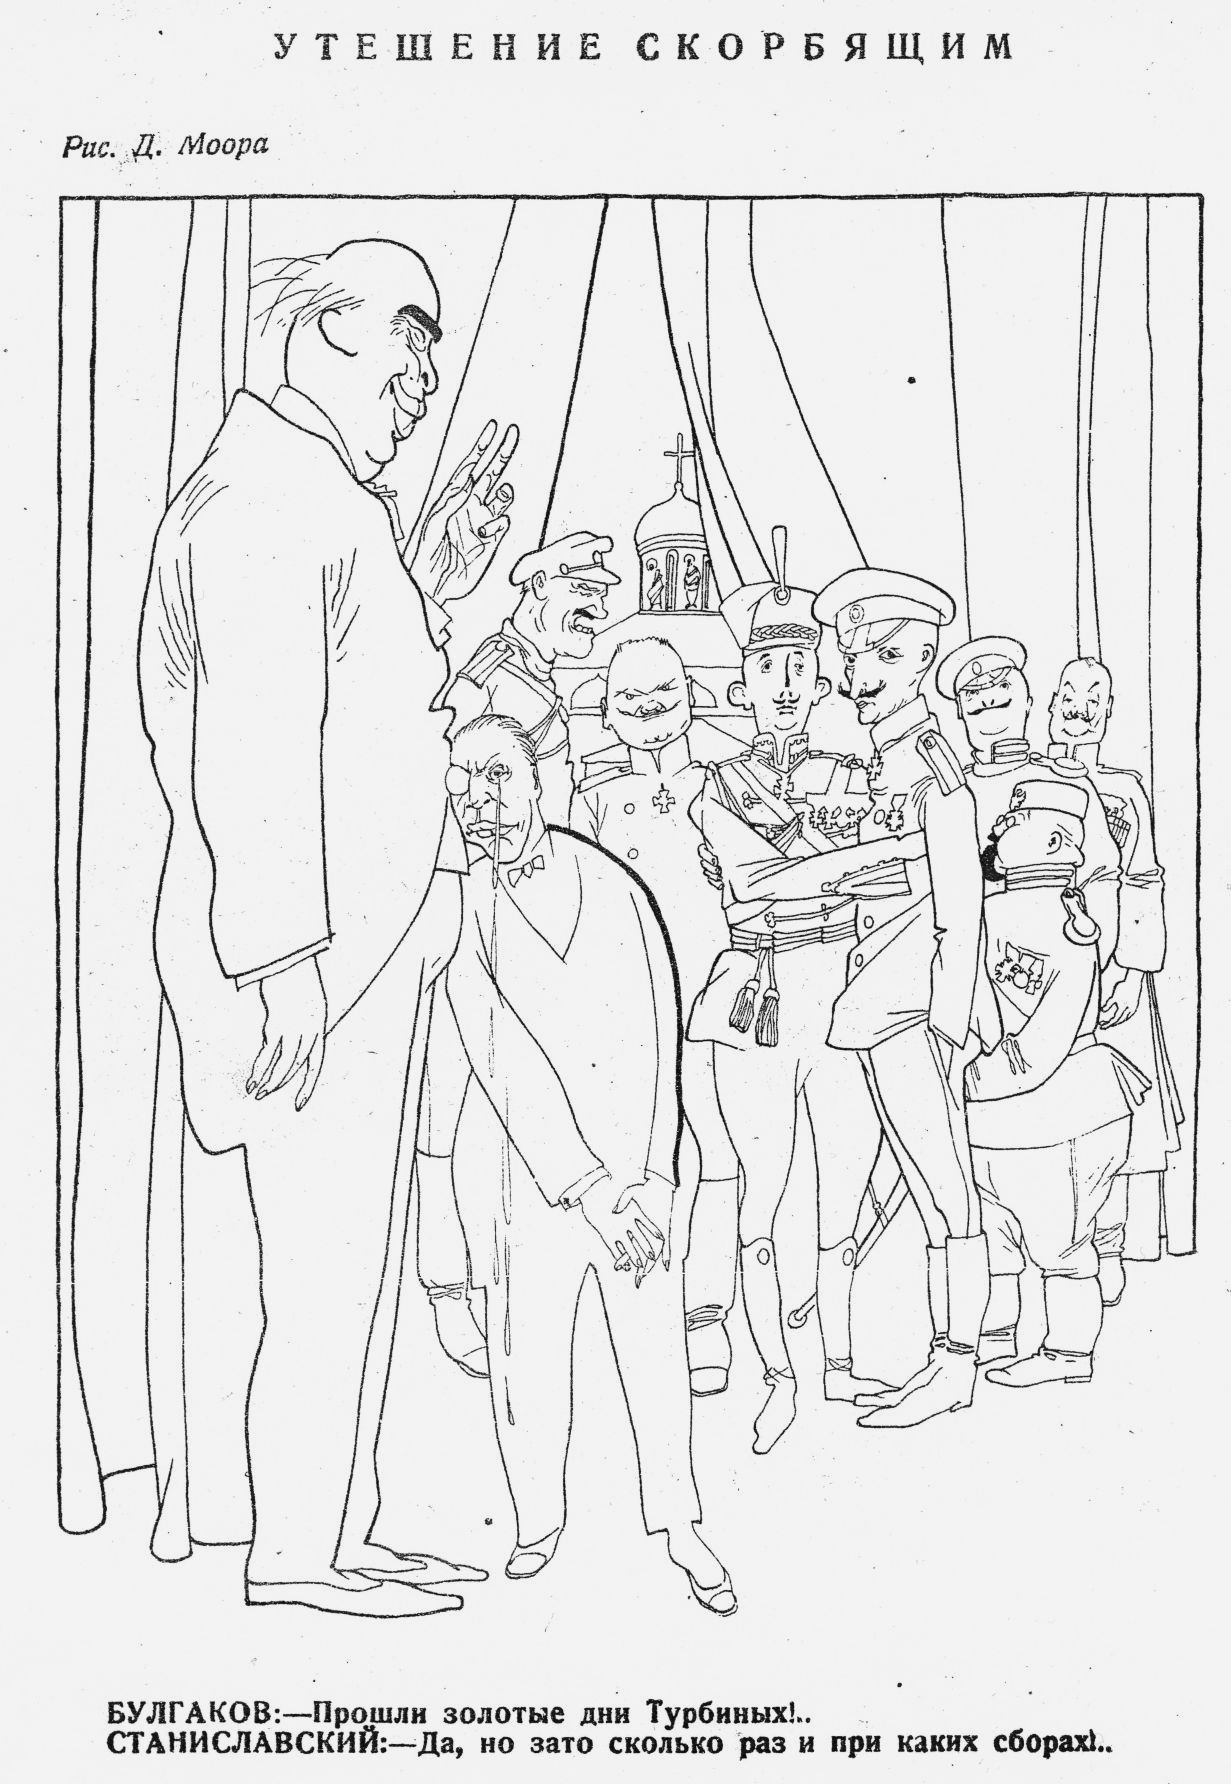 Карикатура Д. Моора на М. Булгакова, К. Станиславского и артистов-исполнителей спектакля «Дни Турбиных» по «Белой гвардии». 1927 год